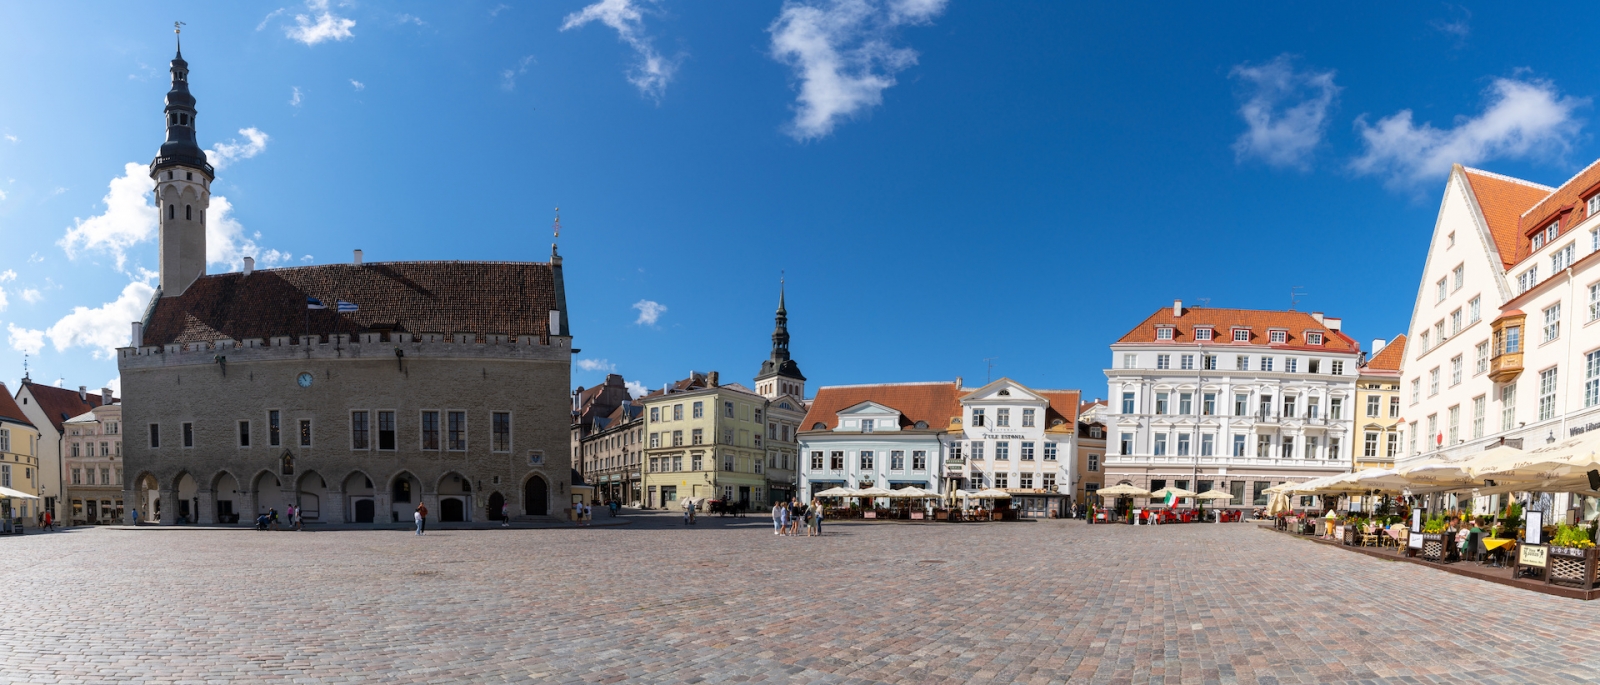 vista de la Plaza Raekoja en el centro histórico de la ciudad de Tallin